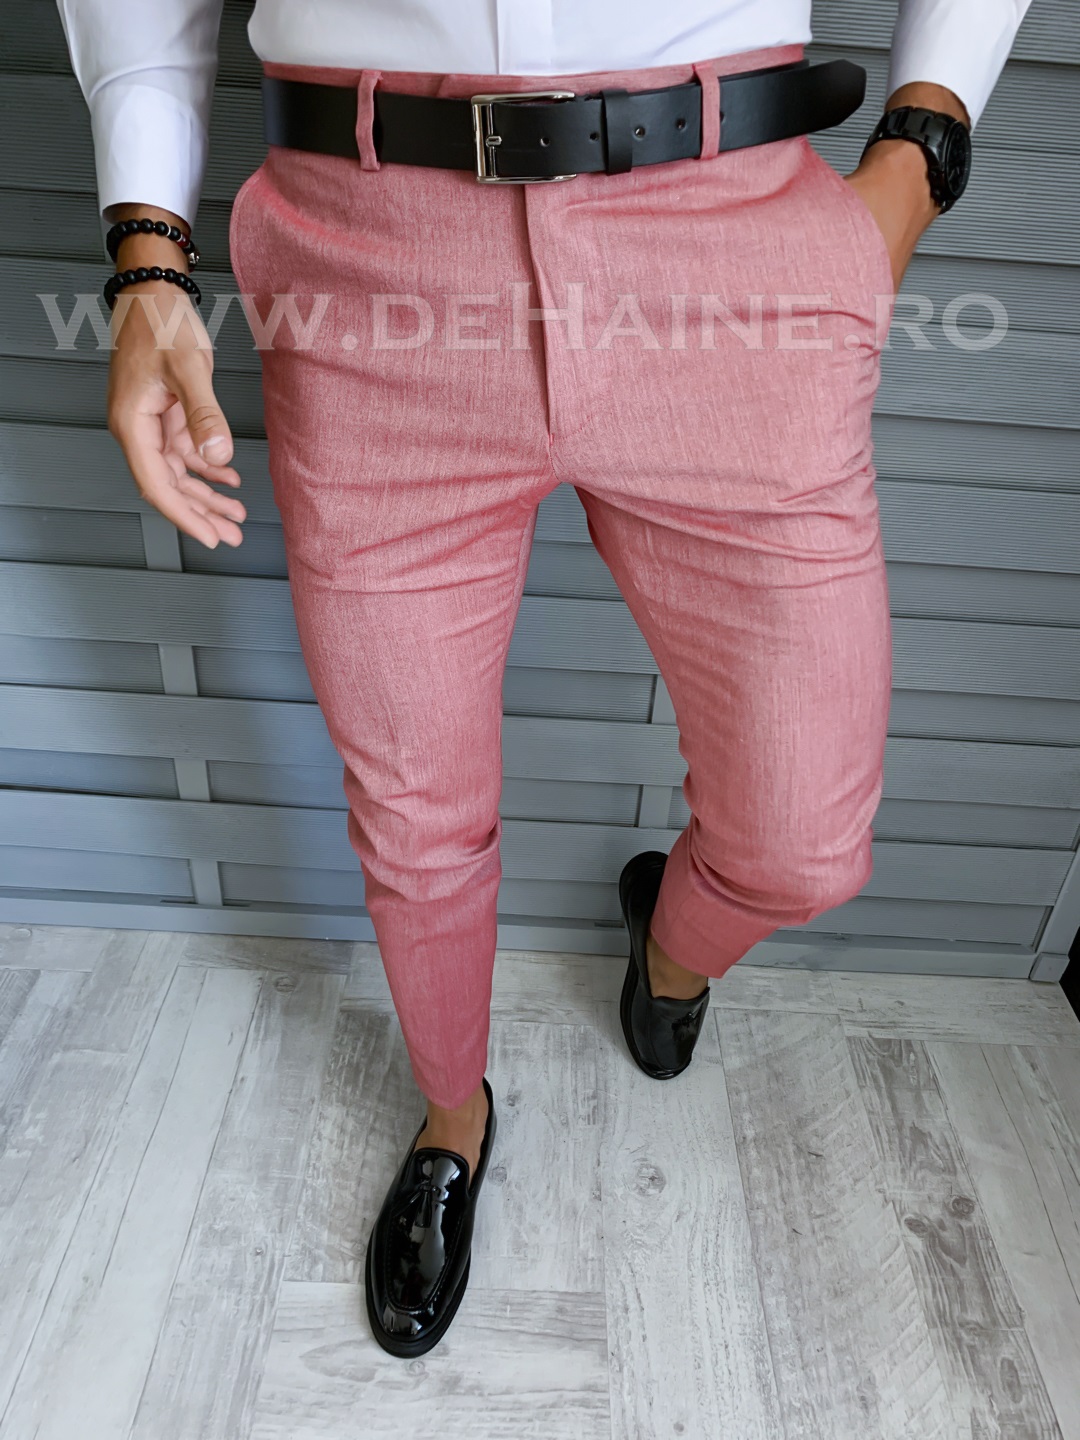 Pantaloni barbati eleganti roz B1804 O2-4.3